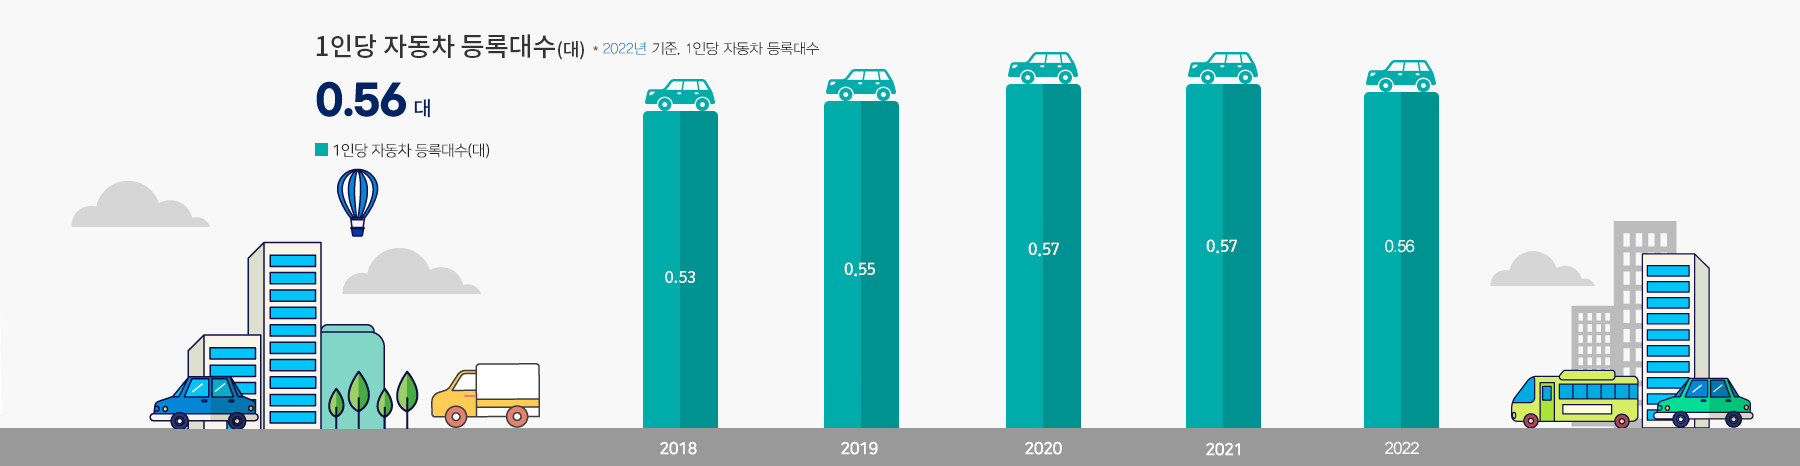 인천광역시 1인당 자동차 등록대수